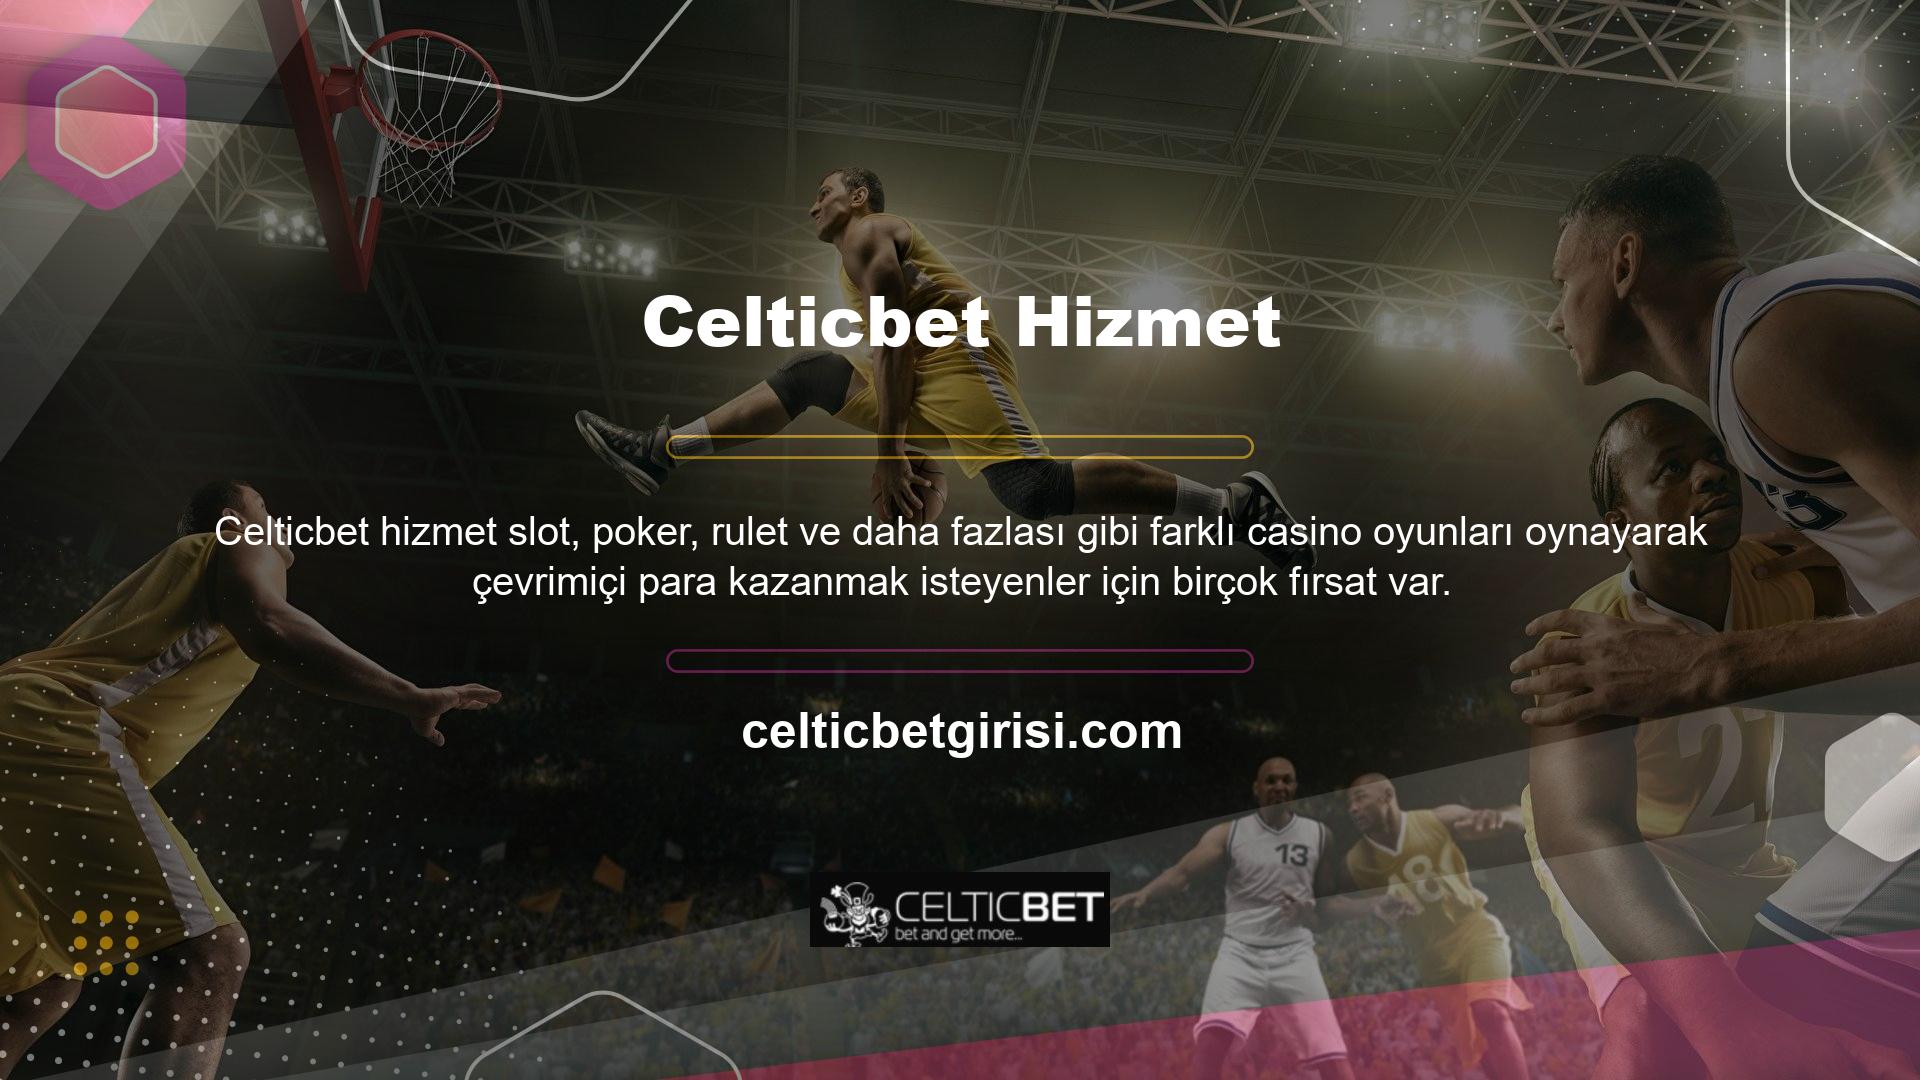 7/24 hizmet veren site, kullanıcıların canlı bahis oynamasına ve canlı casino oynamasına olanak tanır